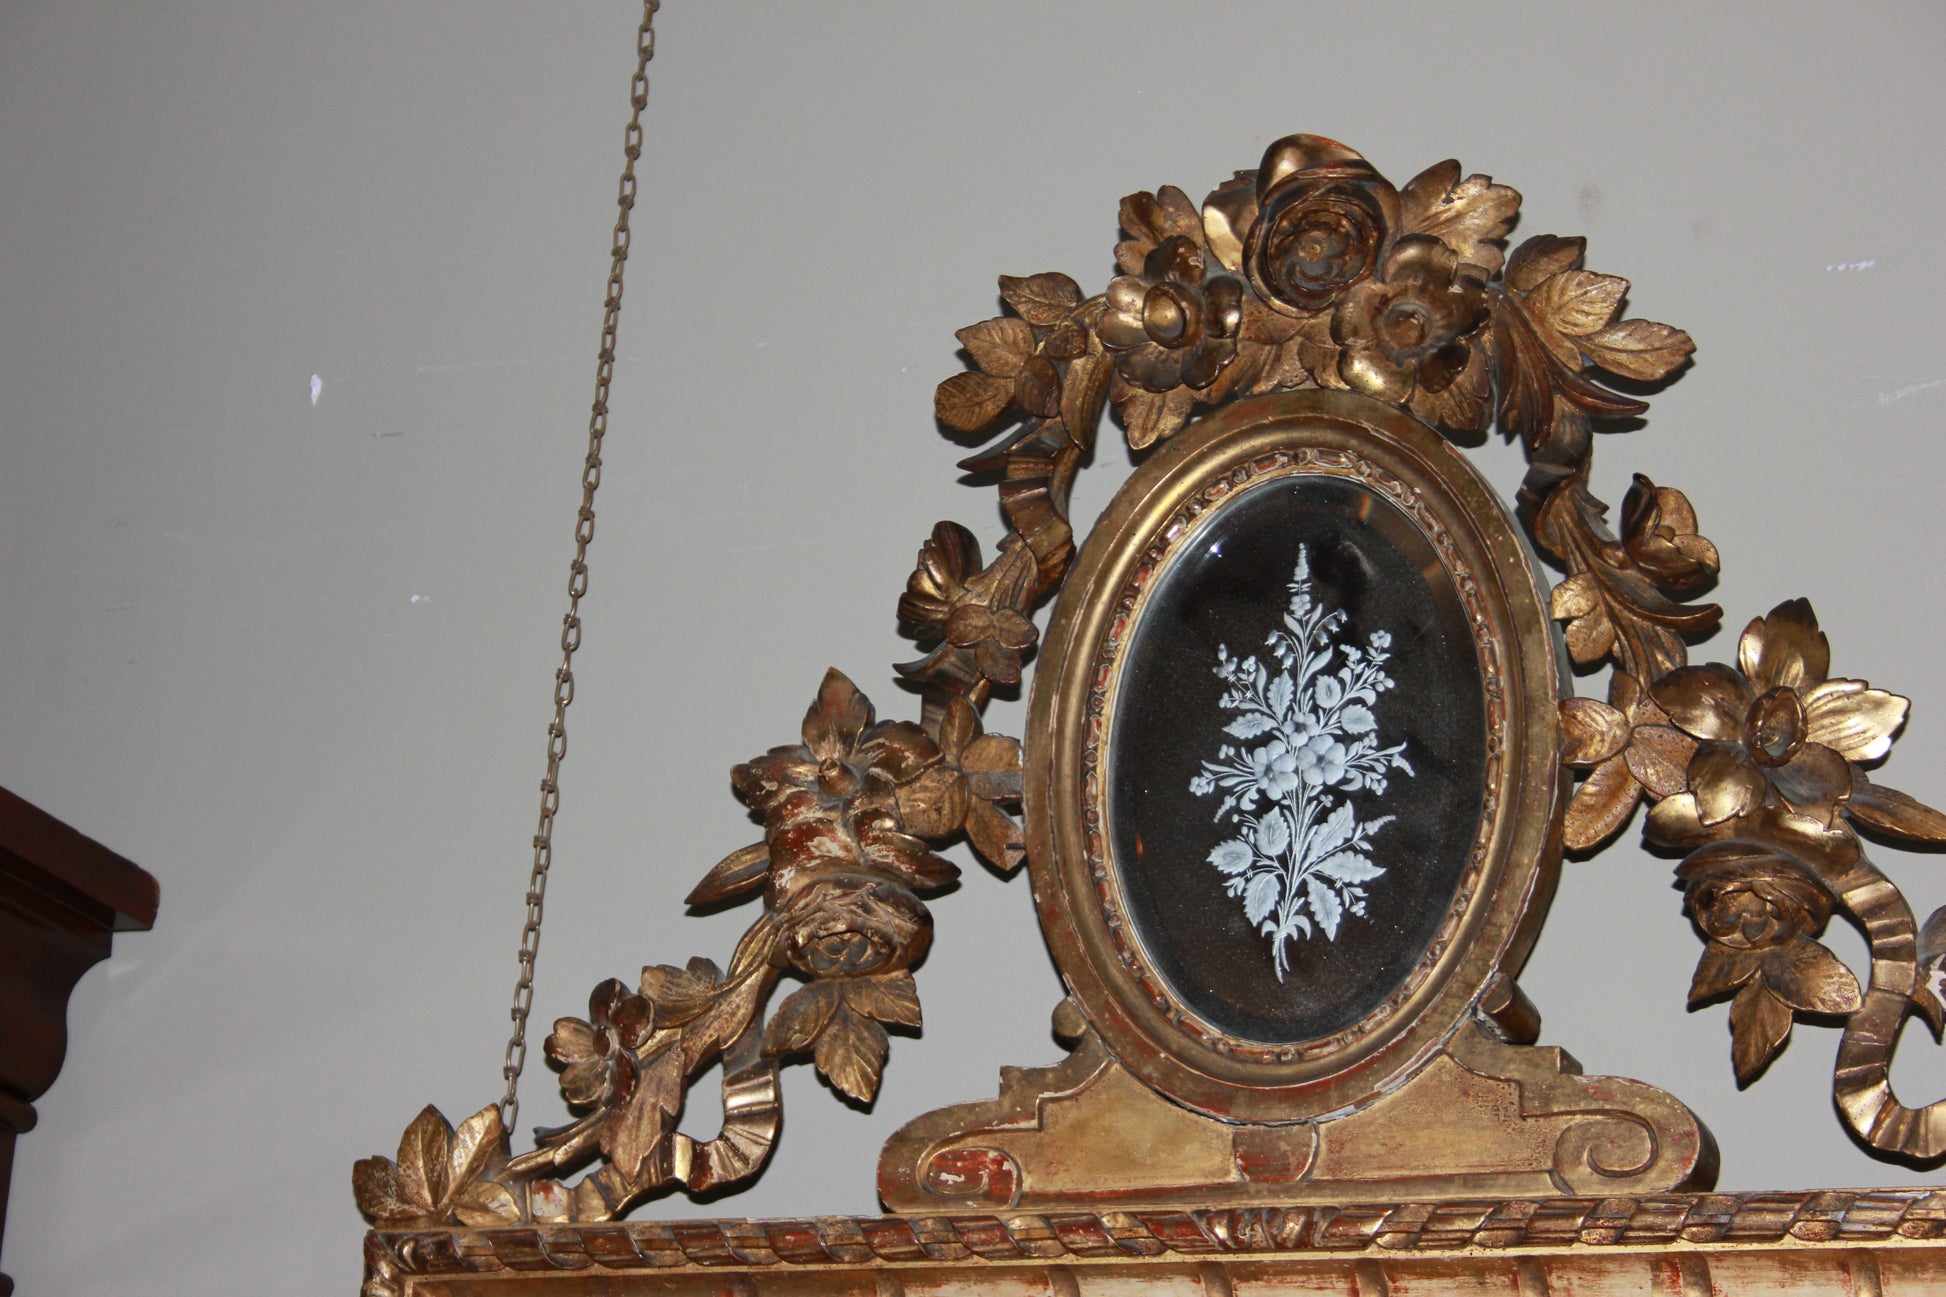 Magnifica specchiera francese della prima metà del 1800 dorata foglia oro con ricchi fregi